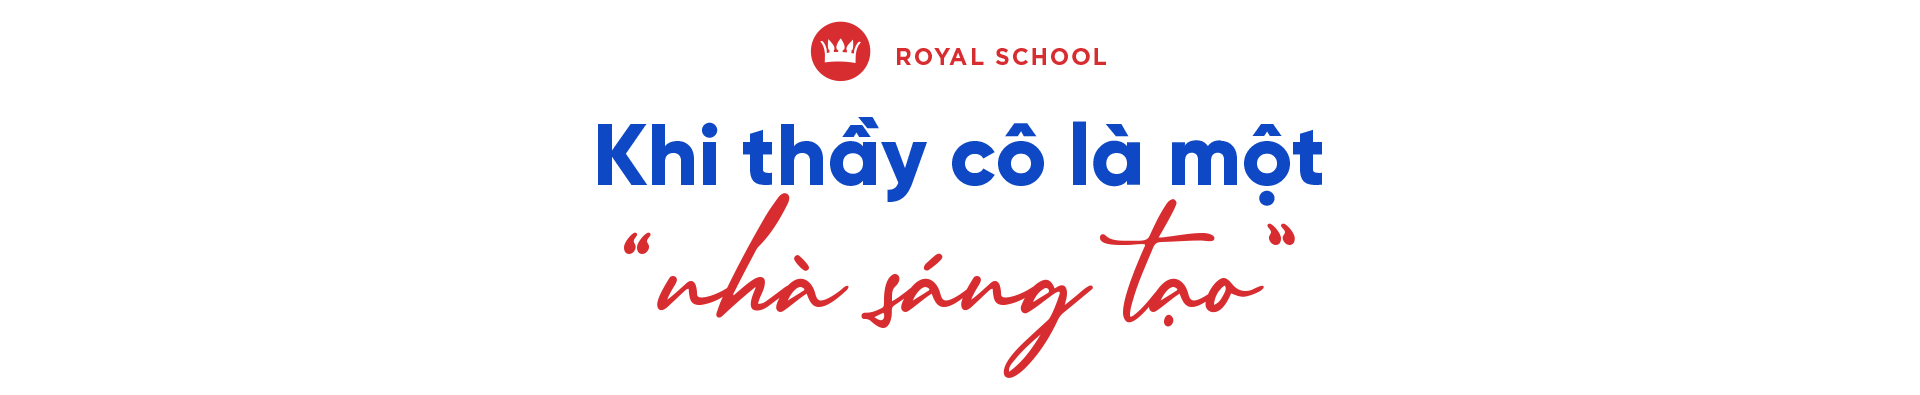 Royal School: Chú trọng giáo dục sáng tạo, xây dựng môi trường hạnh phúc - Ảnh 2.